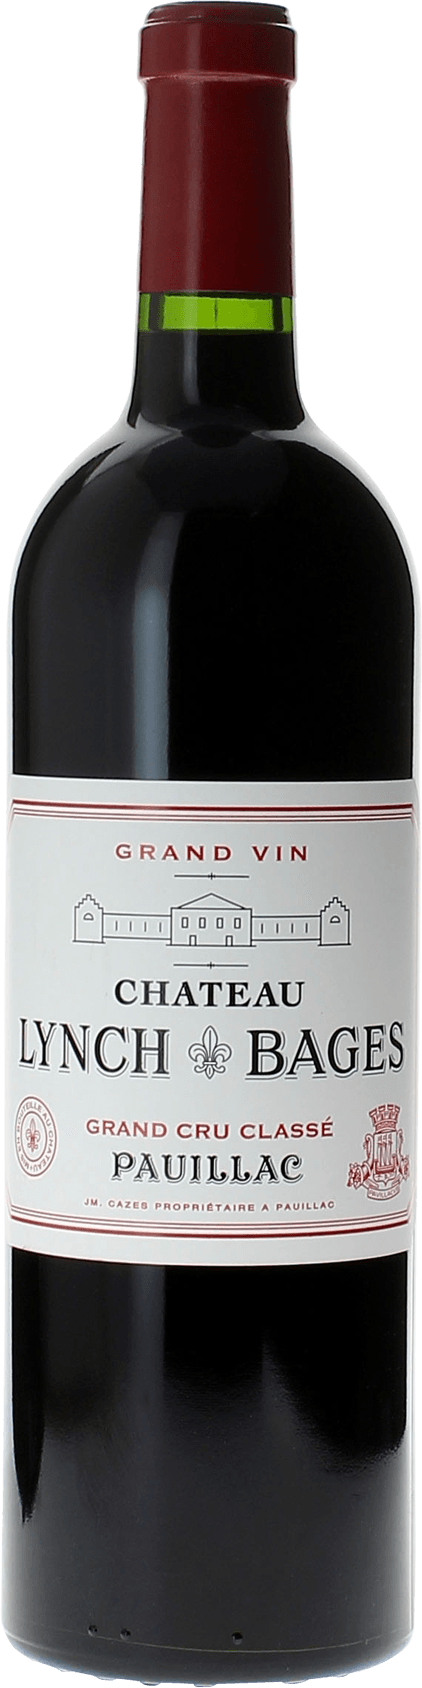 Lynch bages 1985 5 me Grand cru class Pauillac, Bordeaux rouge